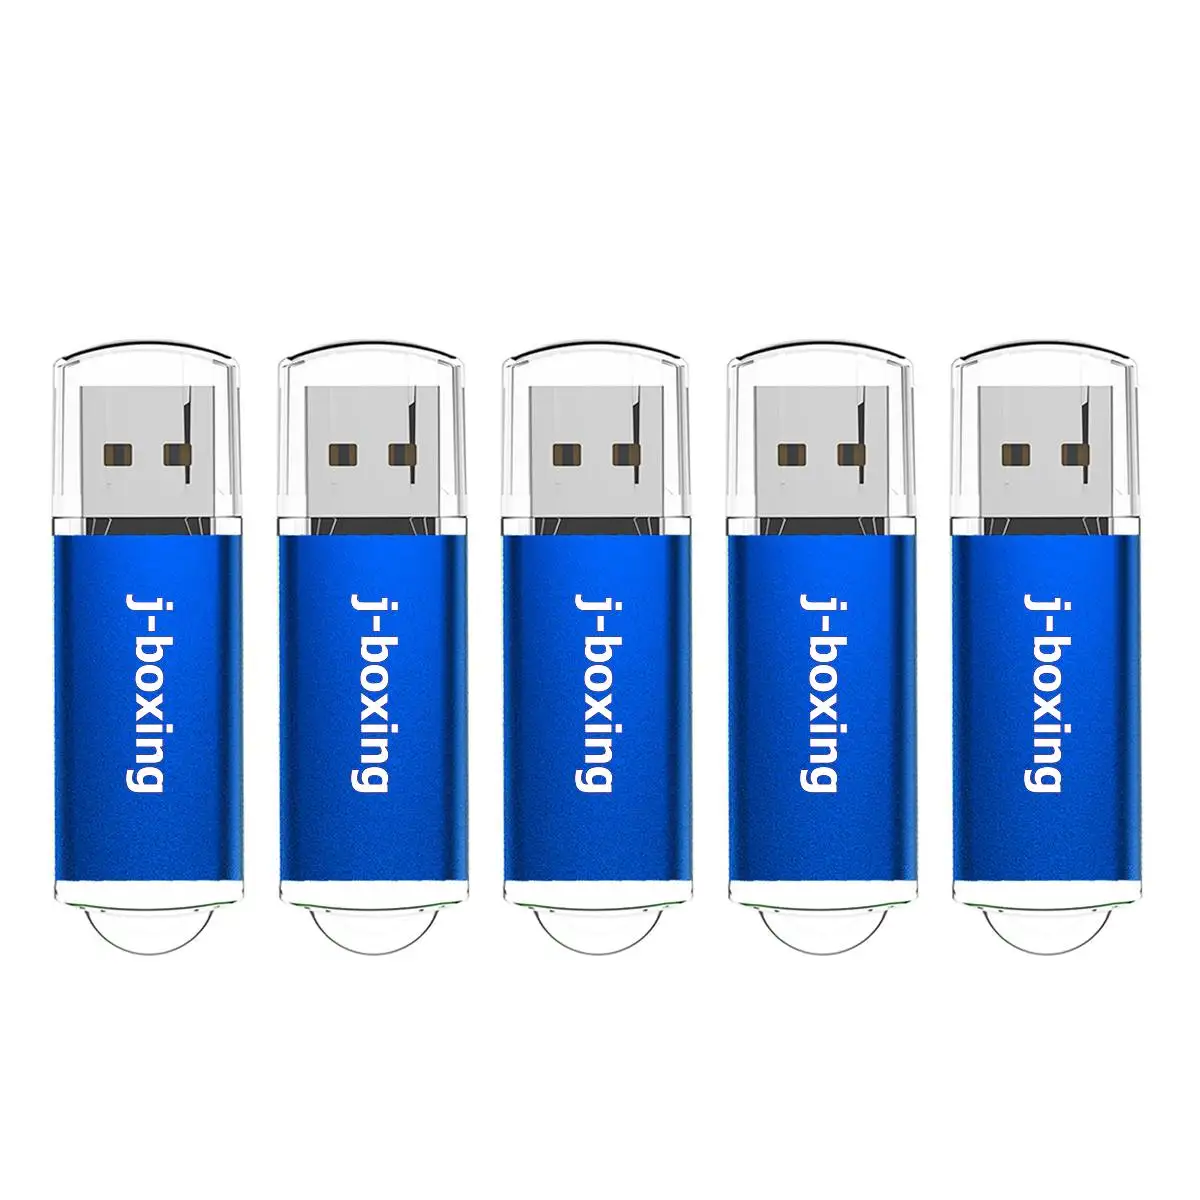 

USB-флеш-накопители J-boxing объемом 4 ГБ, 8 ГБ, флеш-накопители объемом 16 ГБ, 32 ГБ, флеш-накопители с крышкой на 1 Гб, 2 Гб, USB-накопители синего цвета, 5...